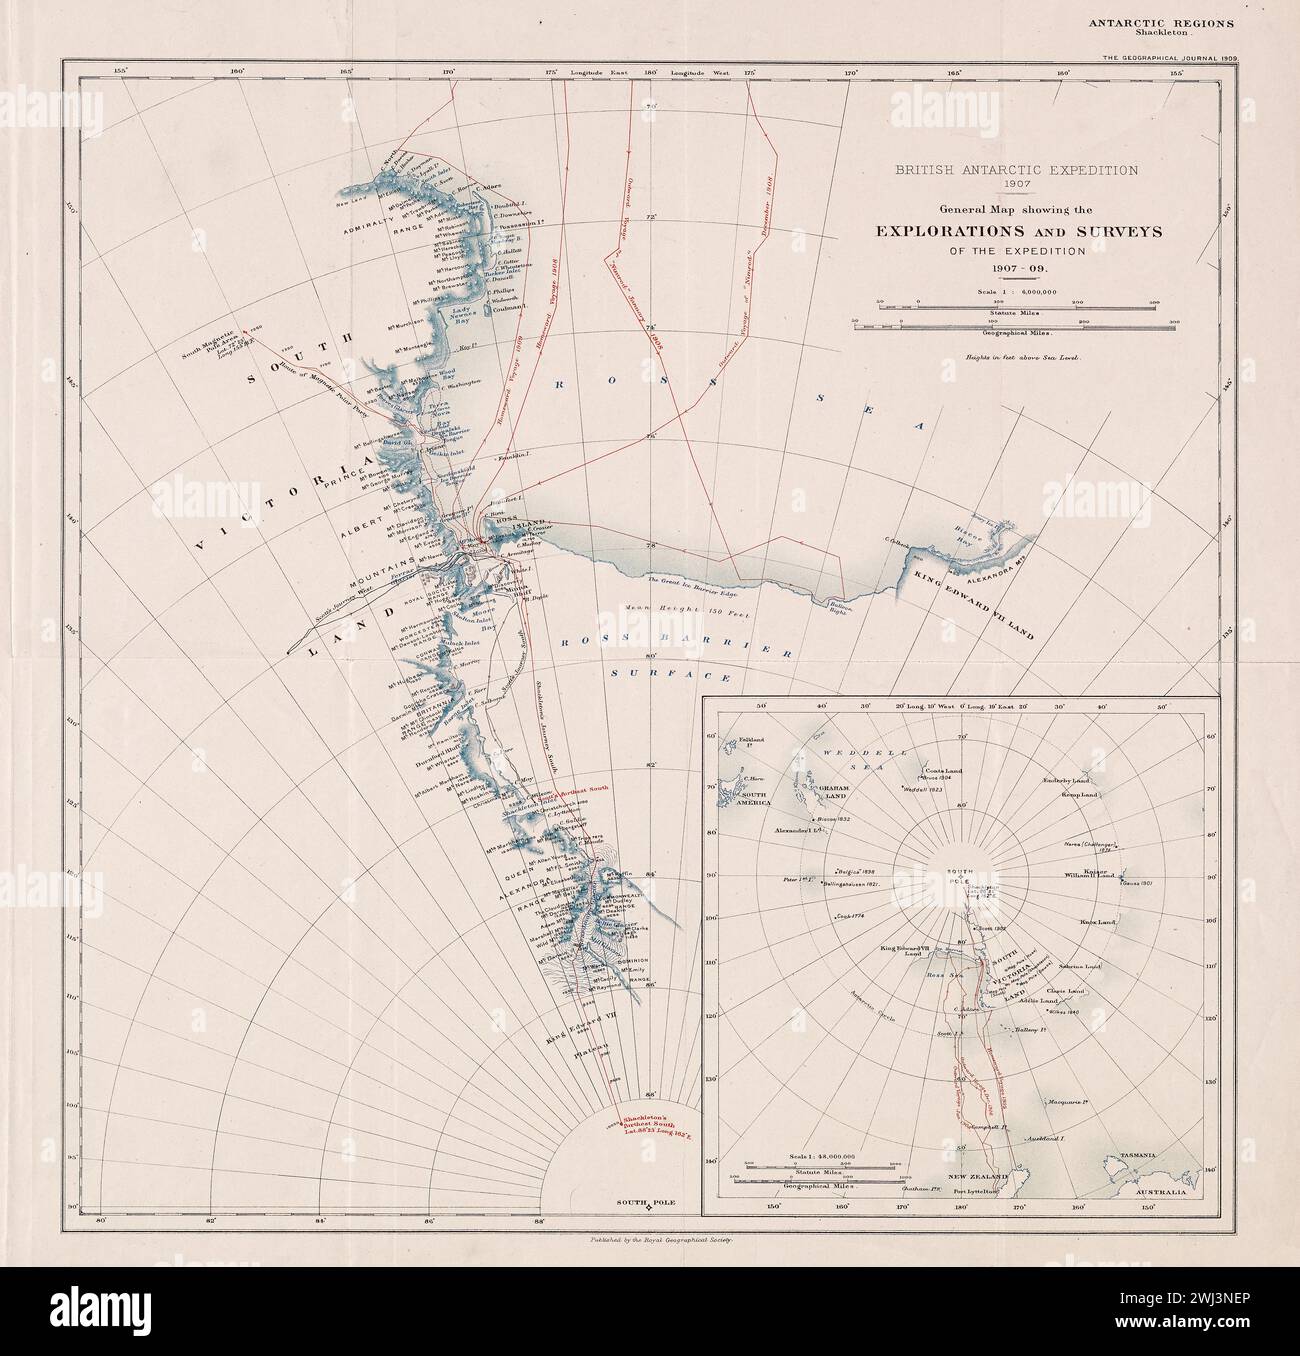 Carte historique vintage montrant la route empruntée par le South Magnetic Pole Party lors de l'expédition britannique en Antarctique de Shackleton. La route est datée de la fin de 1908 au début de 1909. Banque D'Images